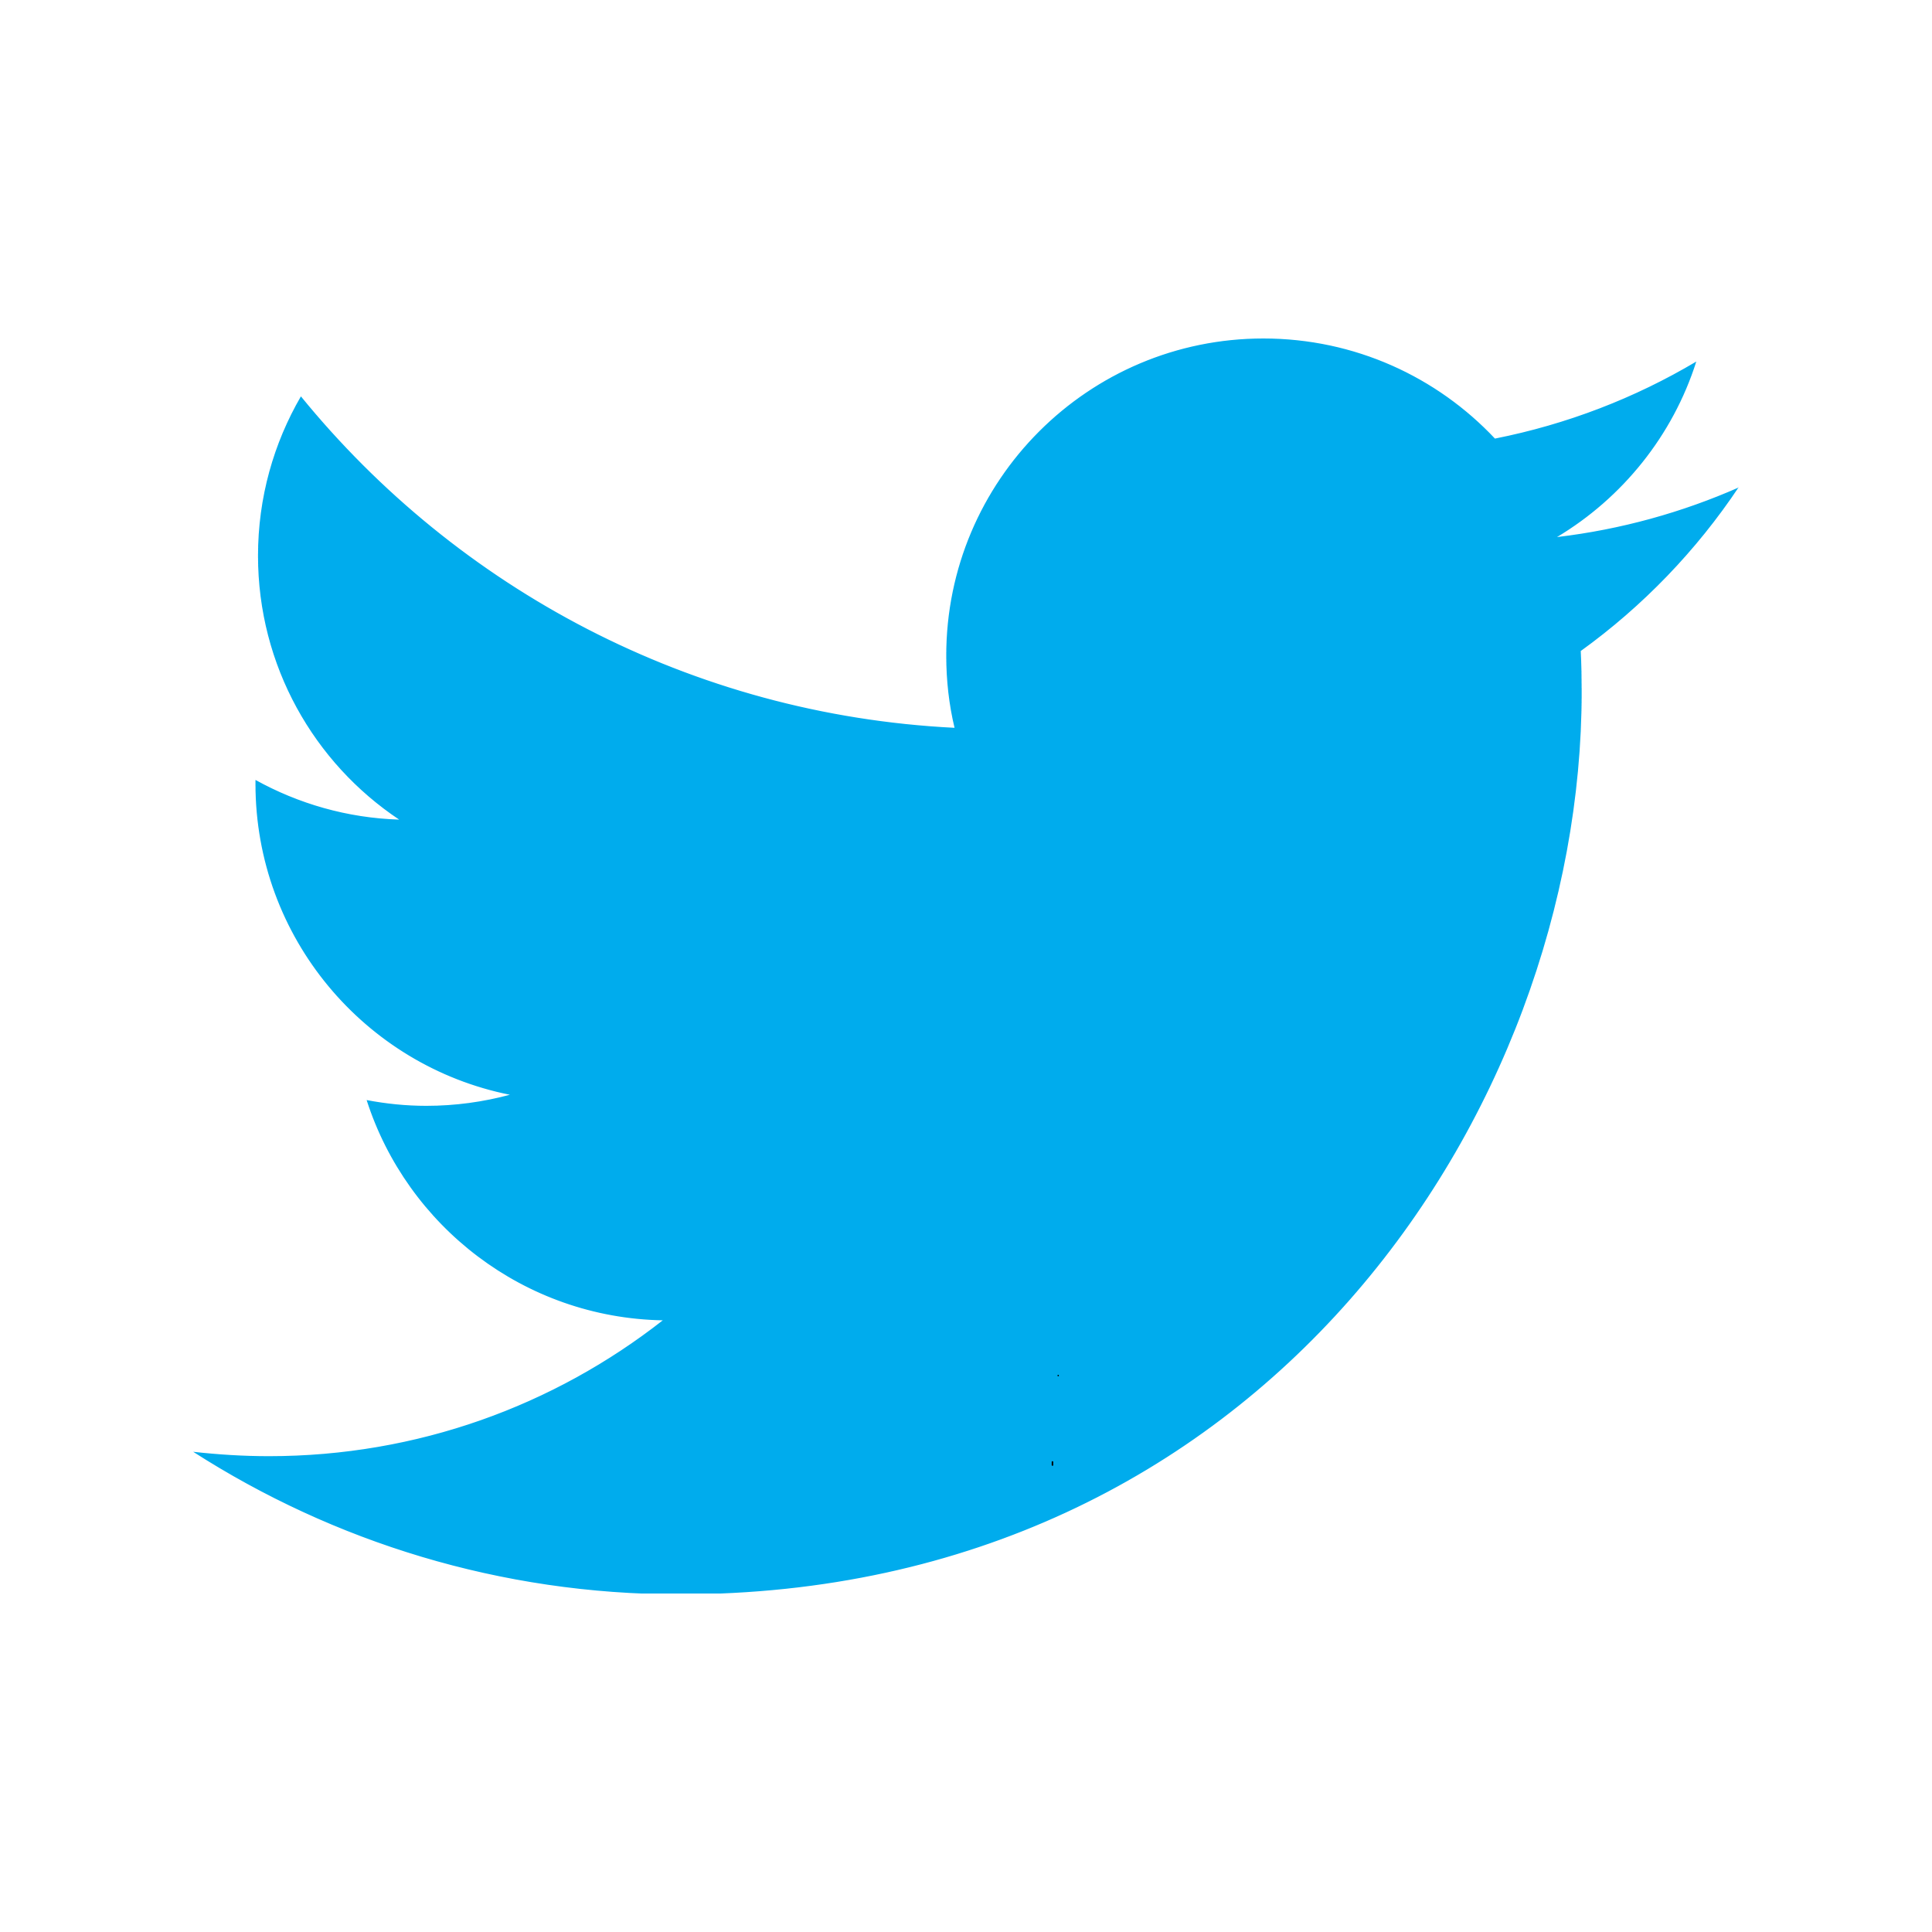 Résultat de recherche d'images pour "logo twitter"